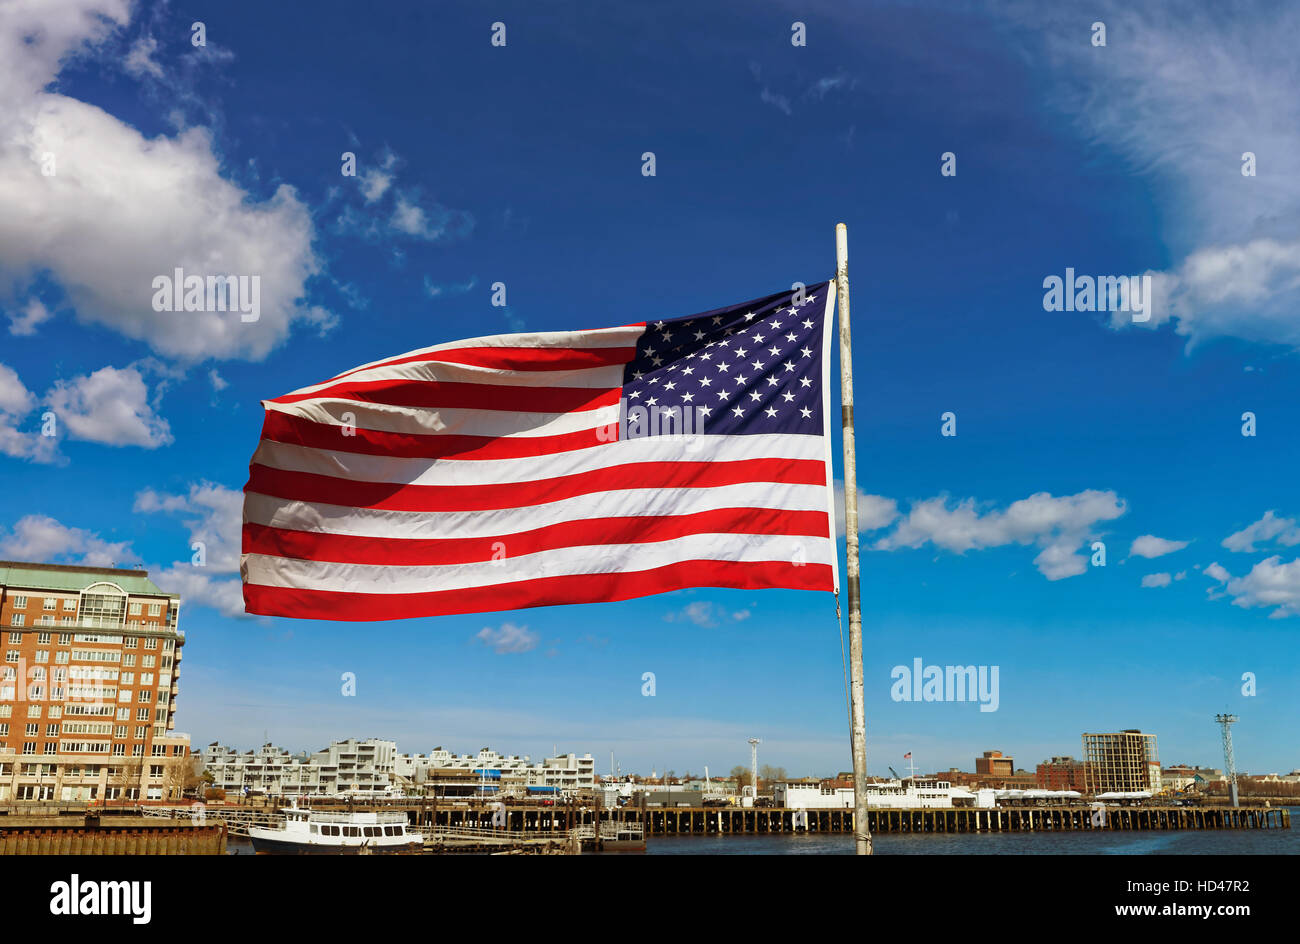 Skyline der Stadt und der Flagge der Vereinigten Staaten in Boston, USA. Das nationale Symbol besteht aus 13 Streifen und 50 kleine weiße Sterne, die jede St vertreten Stockfoto